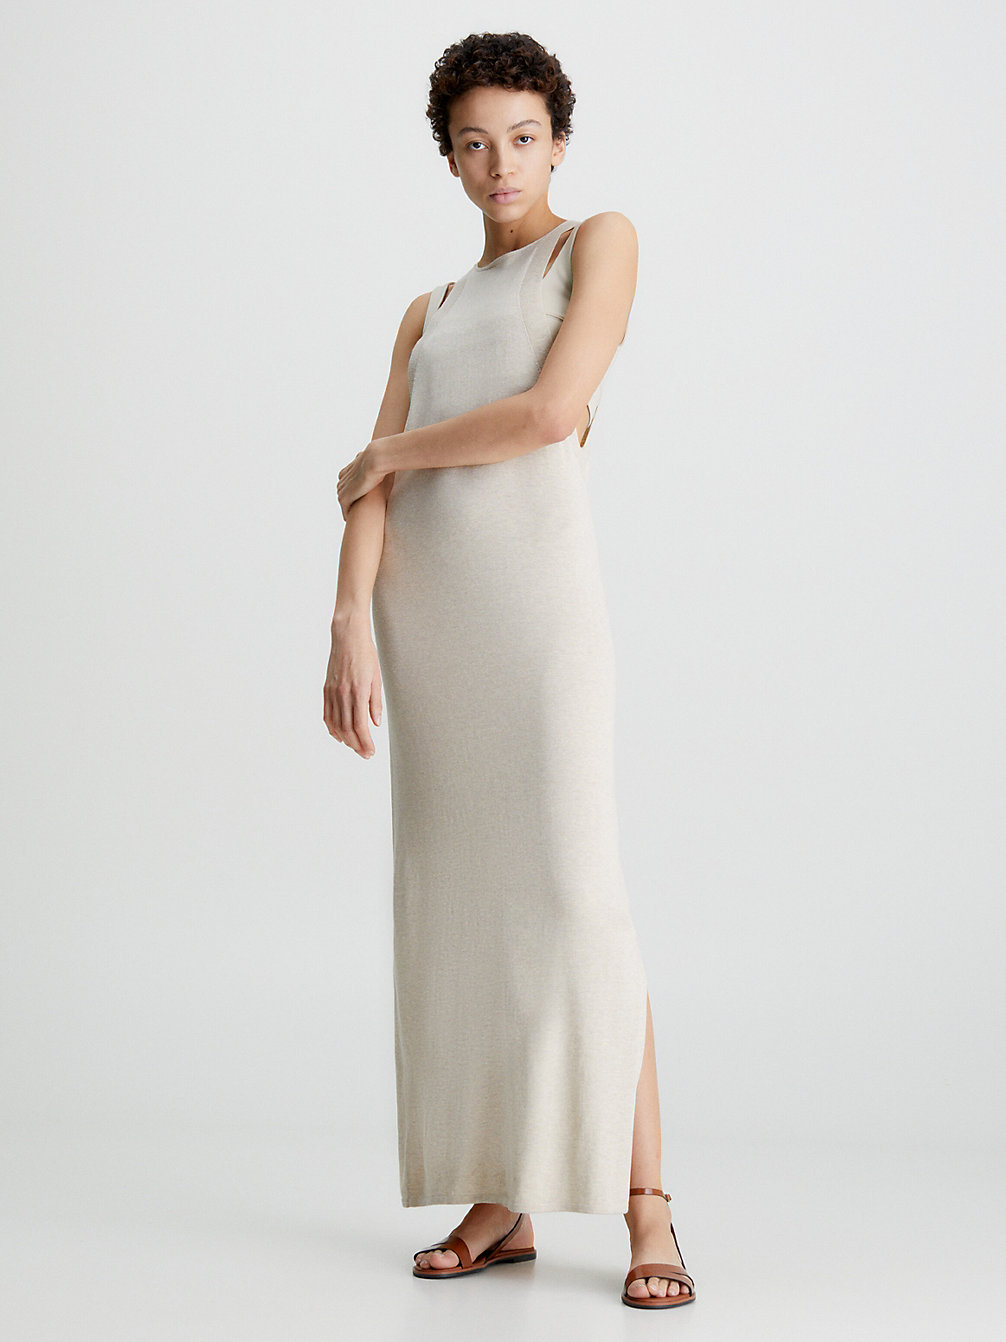 SMOOTH BEIGE Silk Blend Tank Dress undefined women Calvin Klein